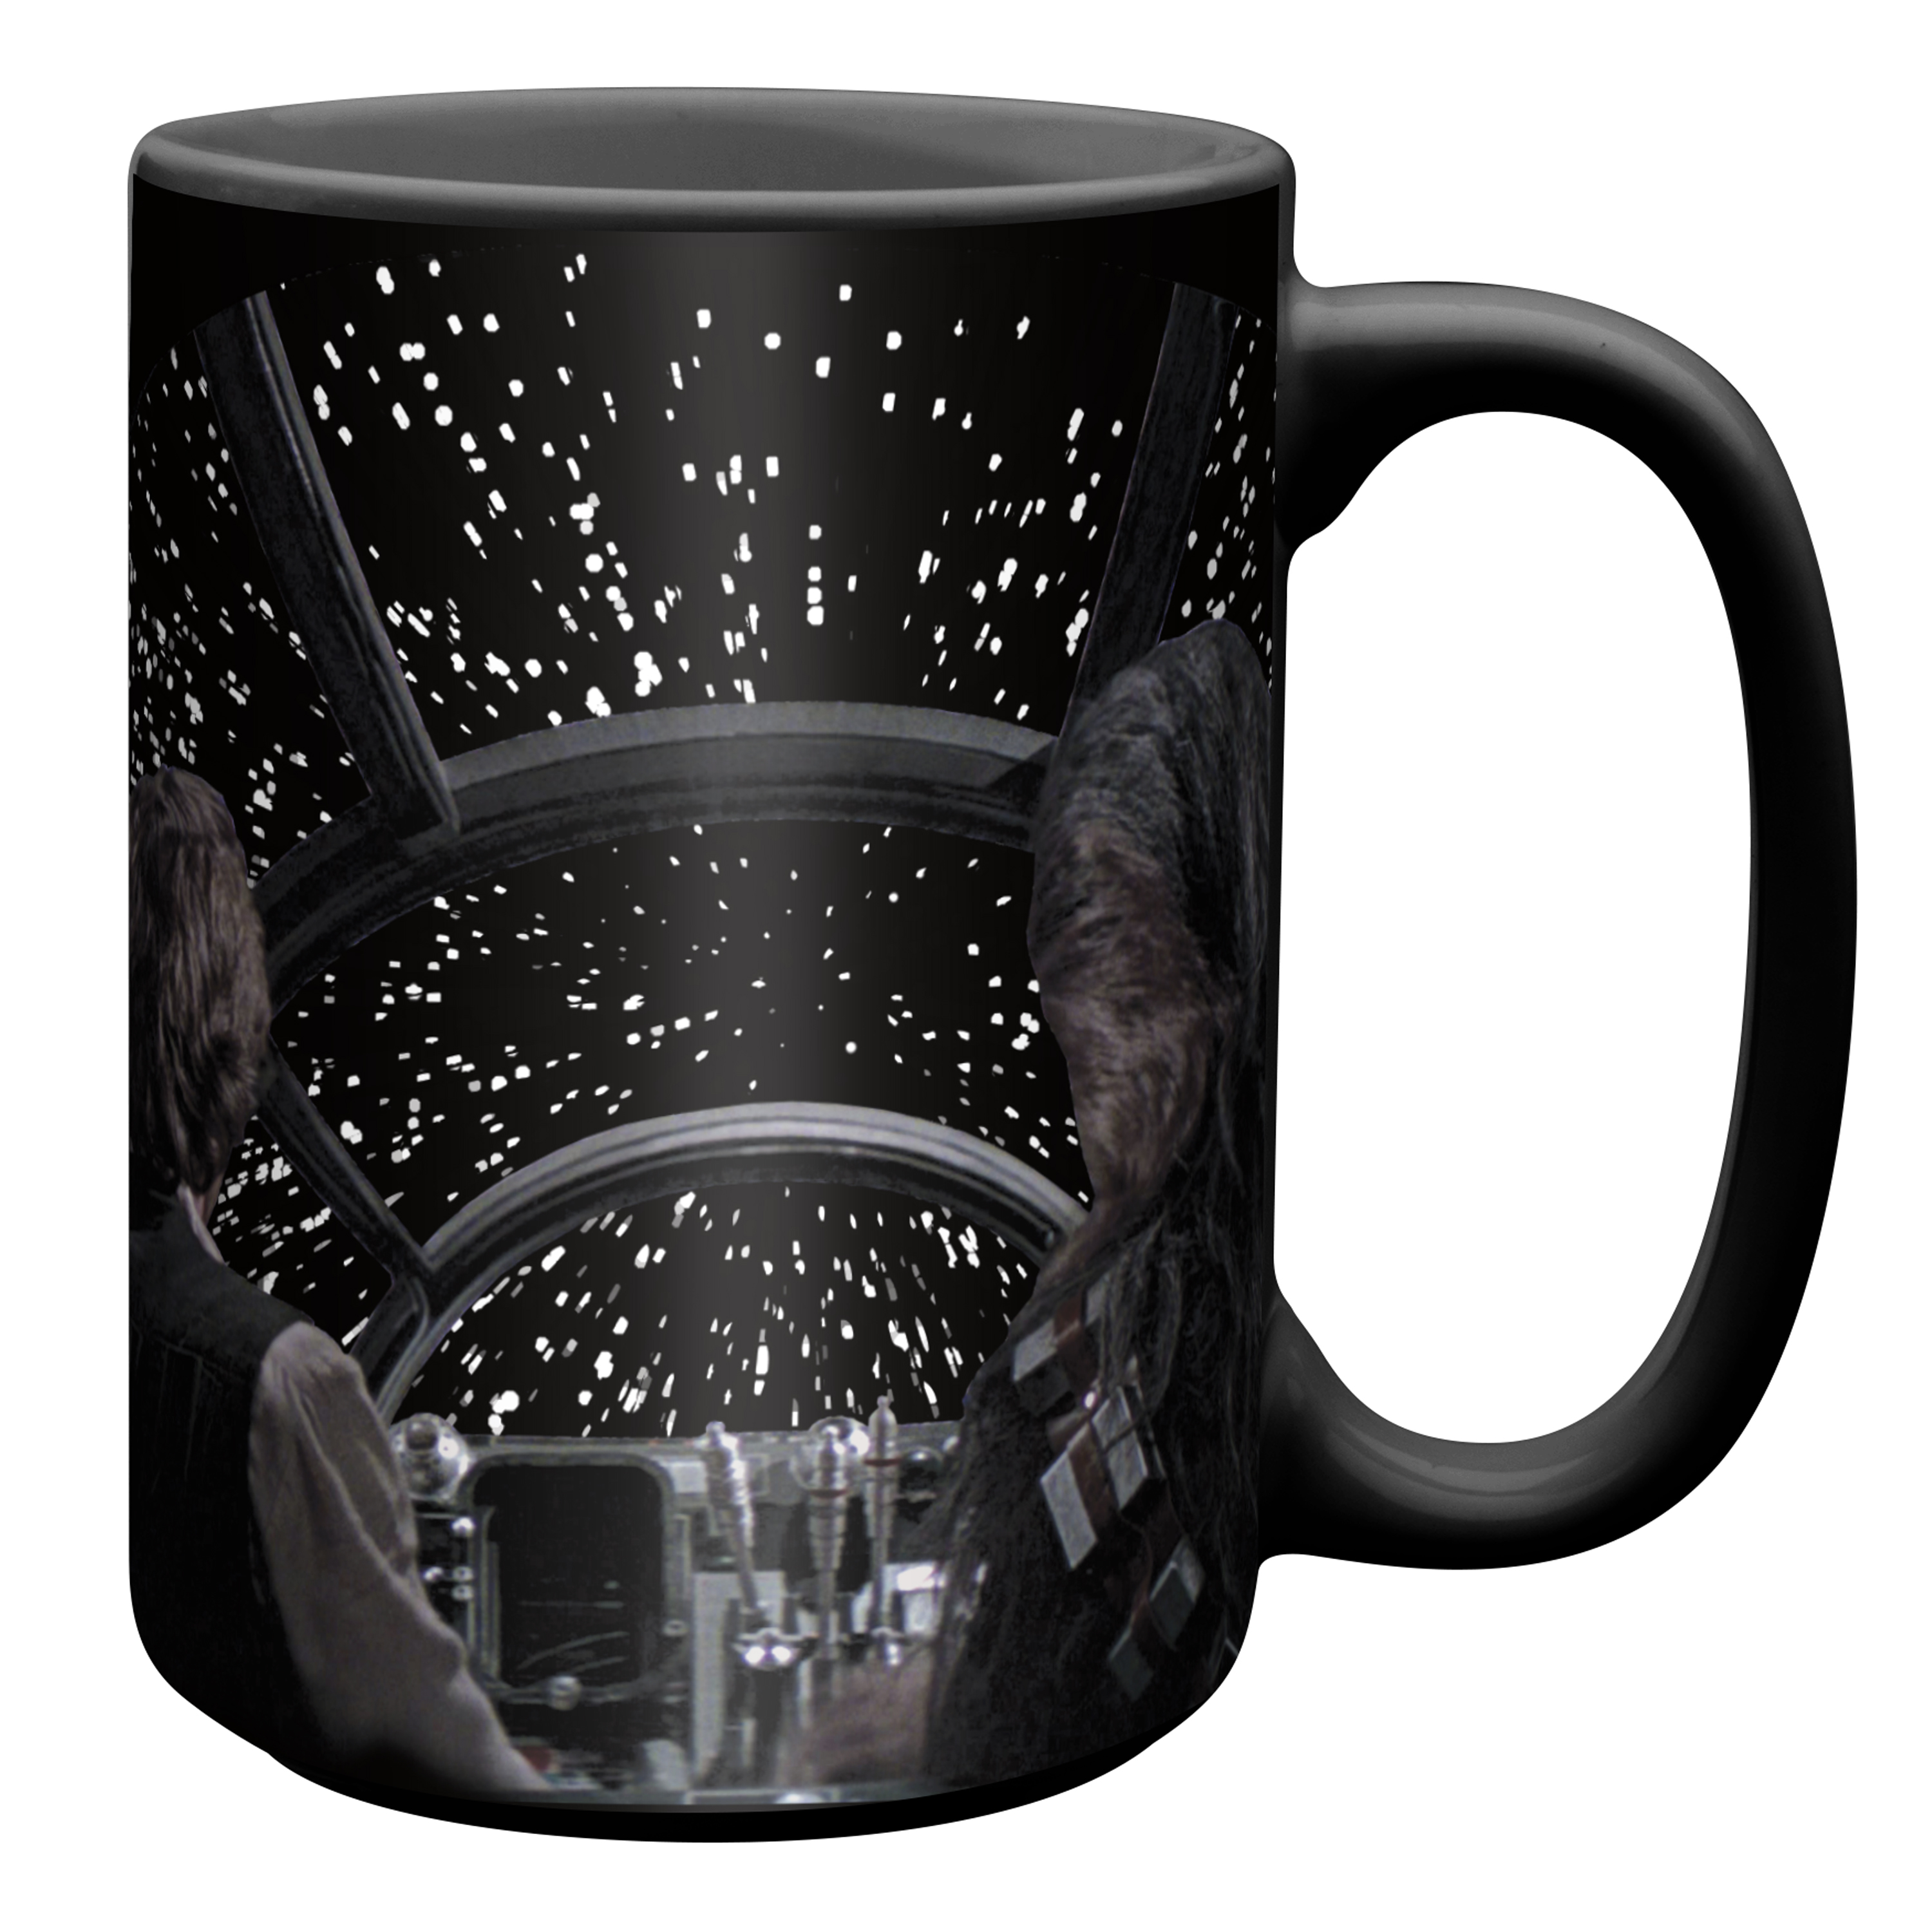 Mug Star Wars - Millennium Falcon